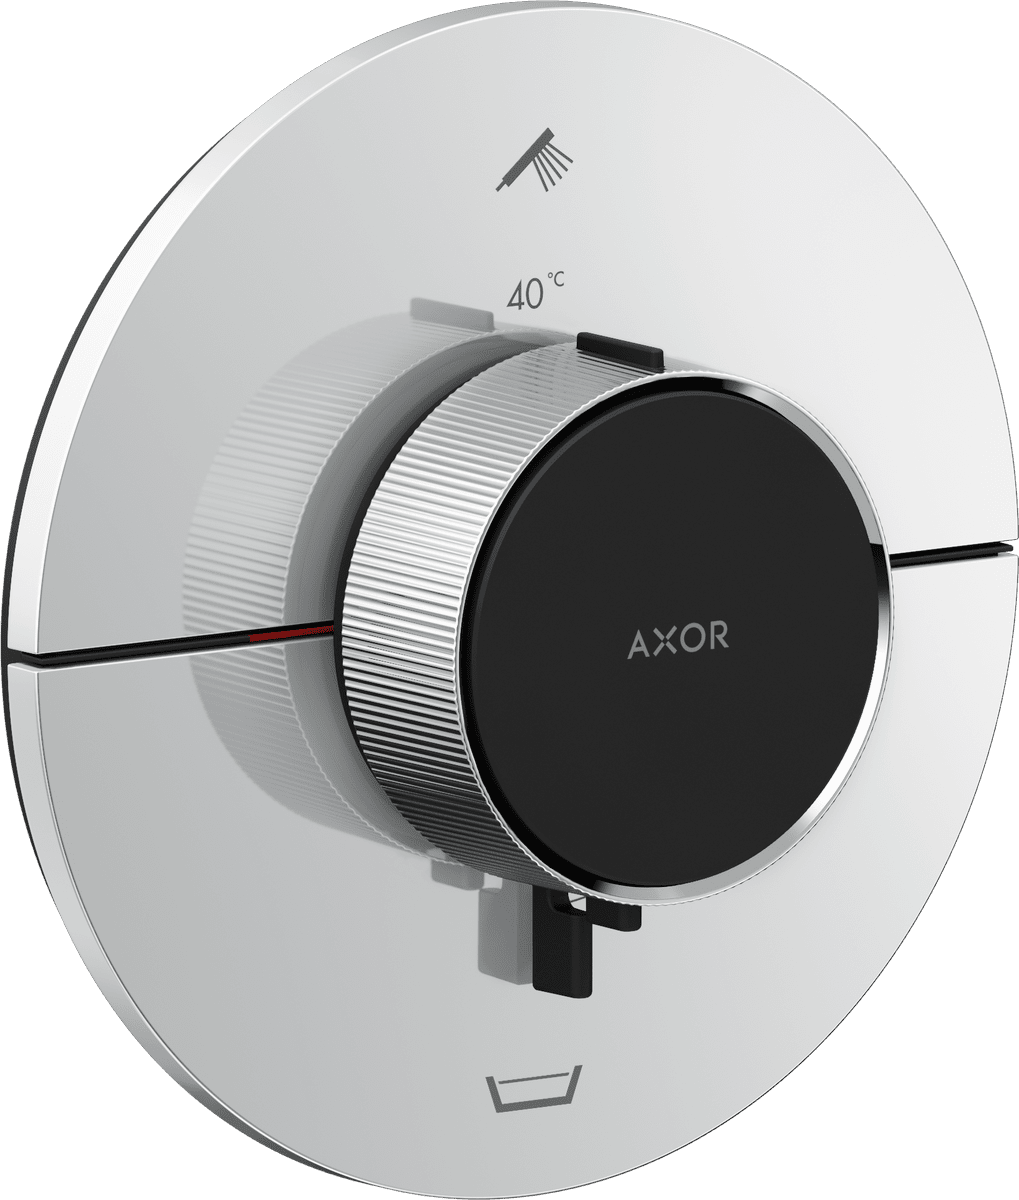 εικόνα του HANSGROHE AXOR ShowerSelect ID Thermostat for concealed installation round for 2 functions with integrated security combination according to EN1717 #36751000 - Chrome